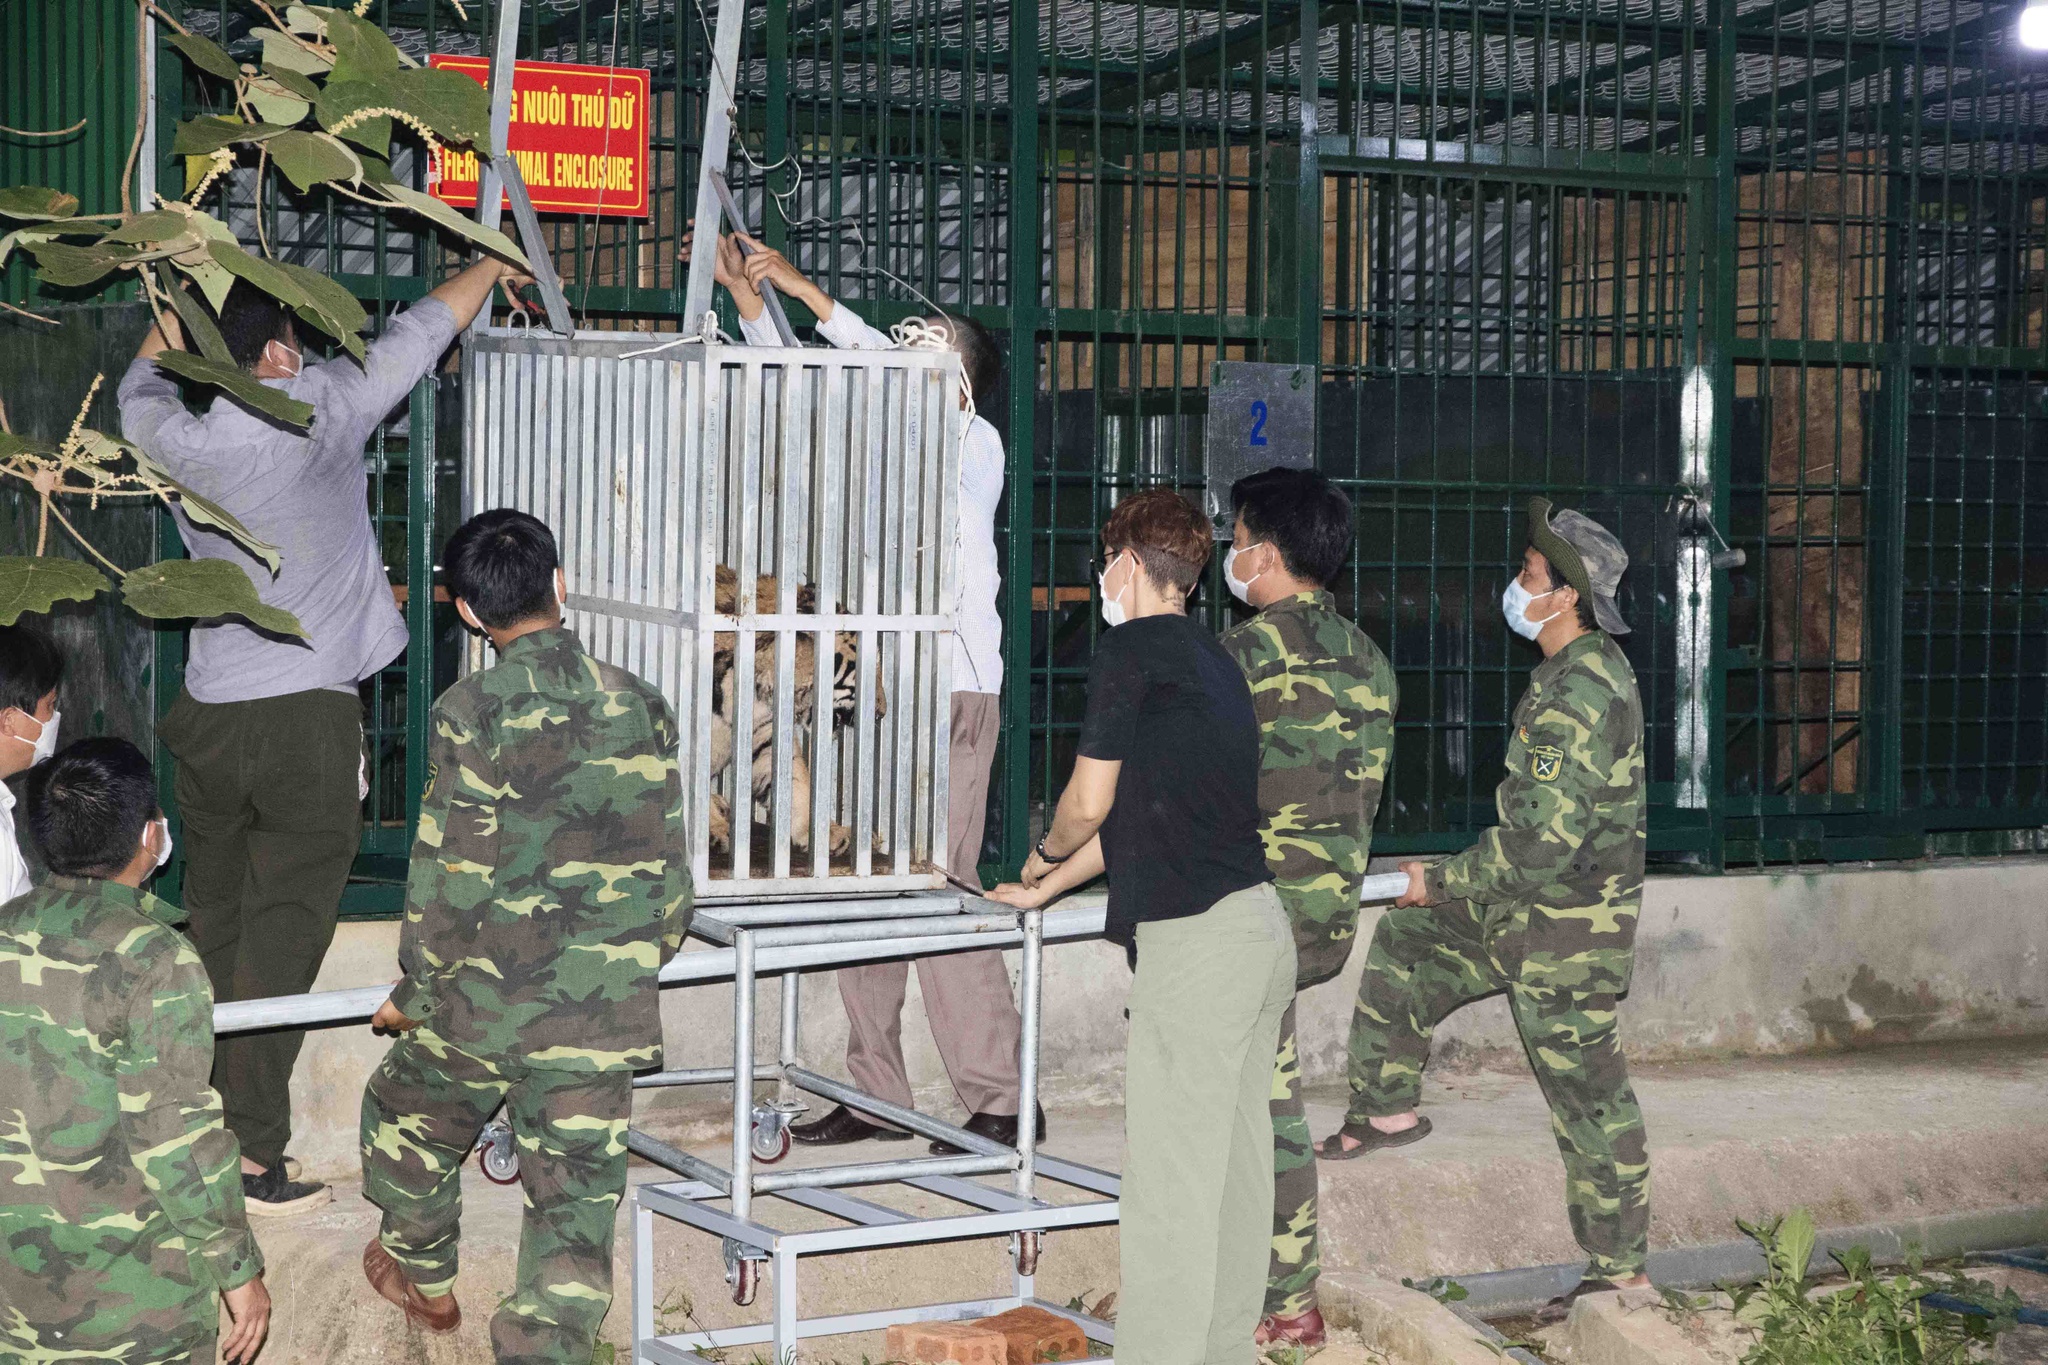 Nhanh chóng xác minh thông tin hổ xuất hiện tại Phong Nha - Kẻ Bàng để bảo vệ du khách và người dân - 3